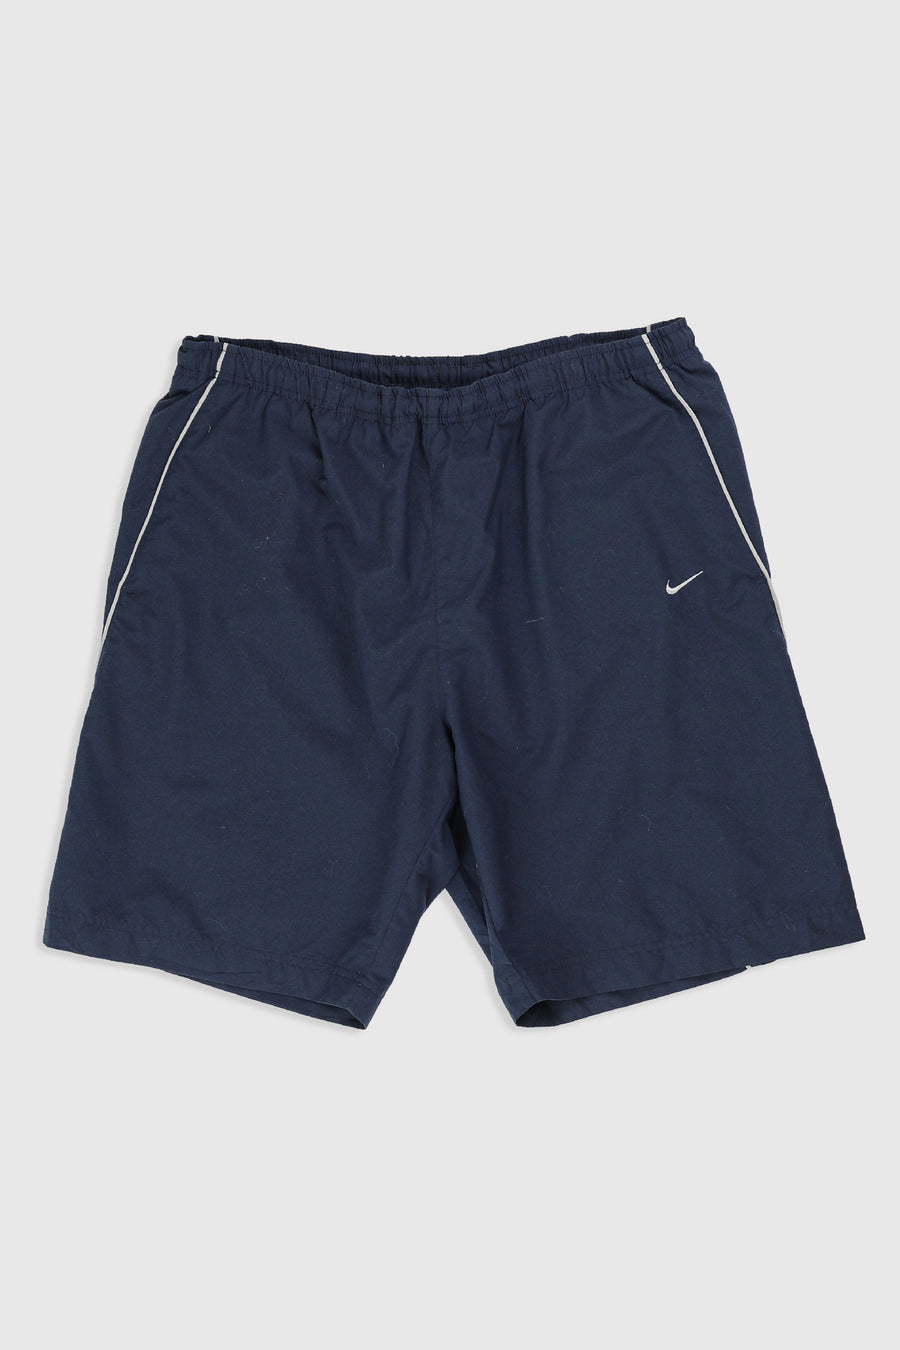 Vintage Nike Shorts